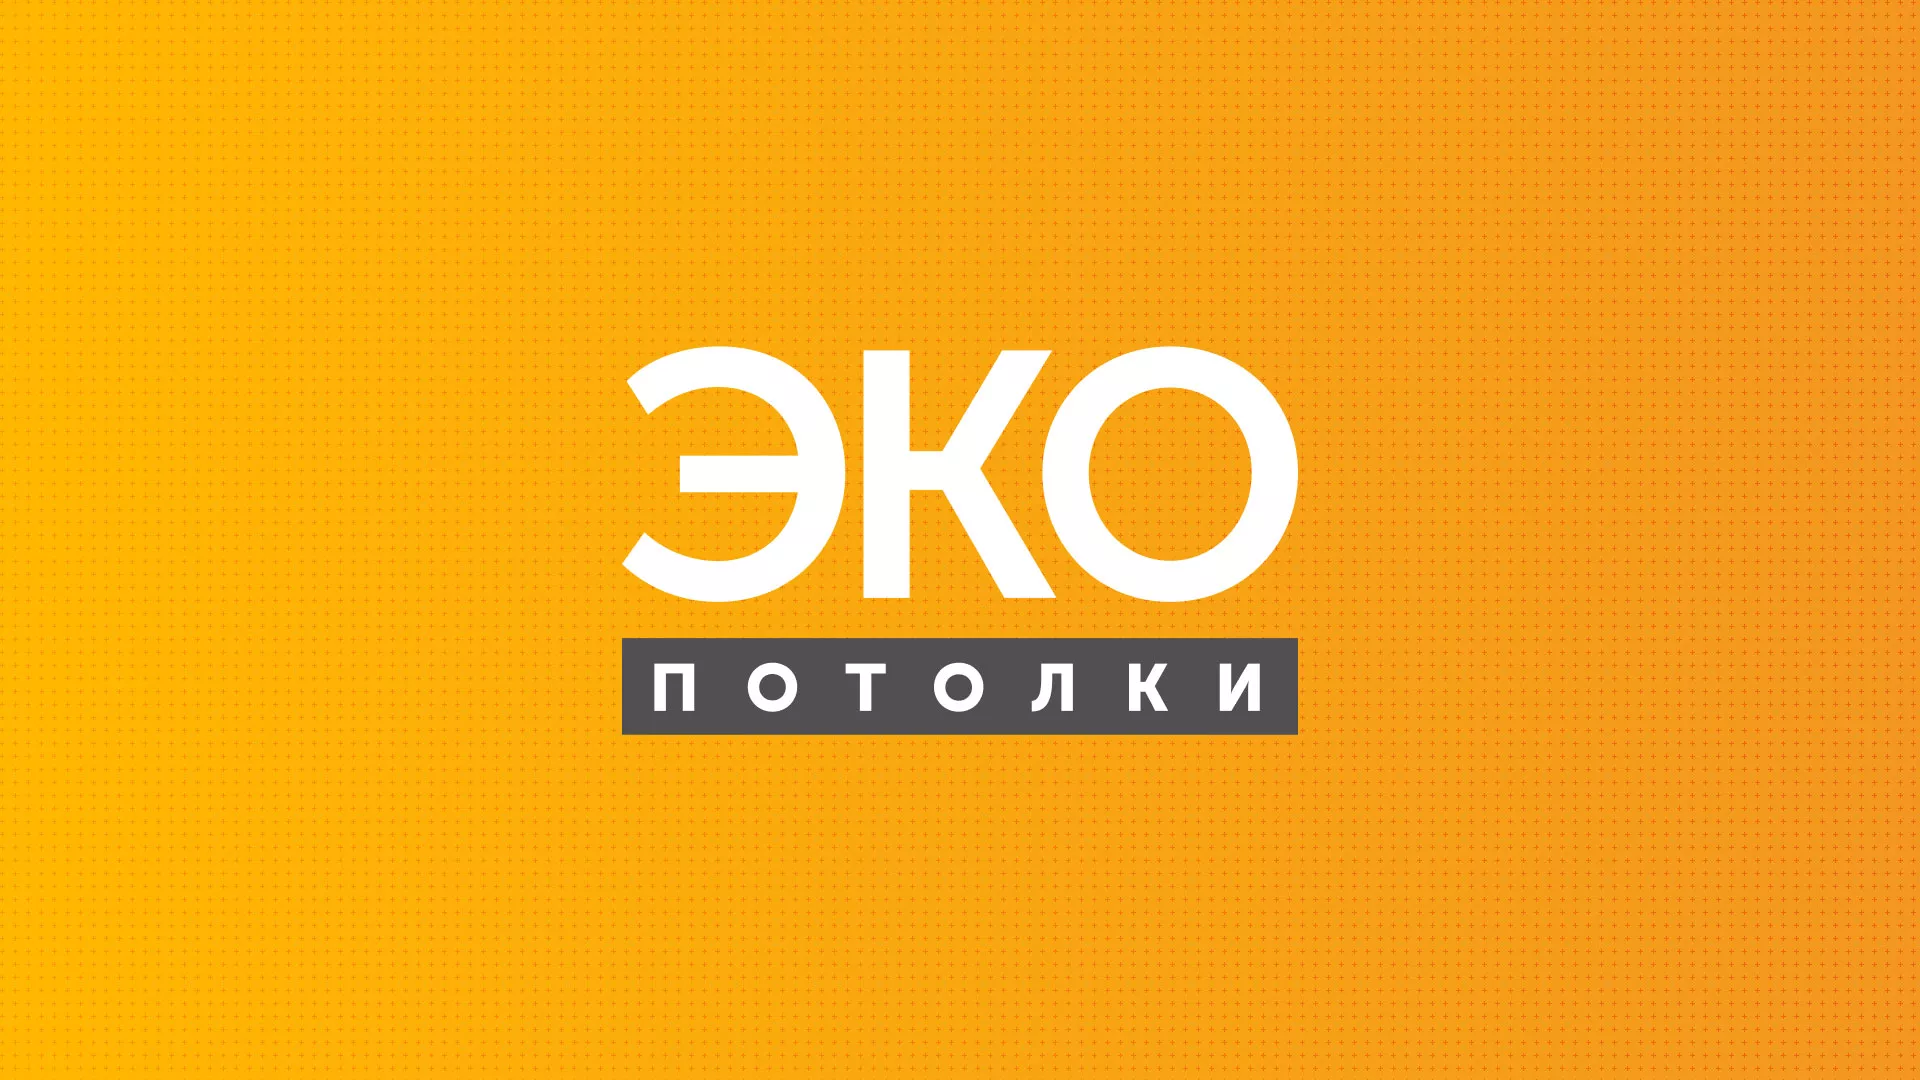 Разработка сайта по натяжным потолкам «Эко Потолки» в Одинцово